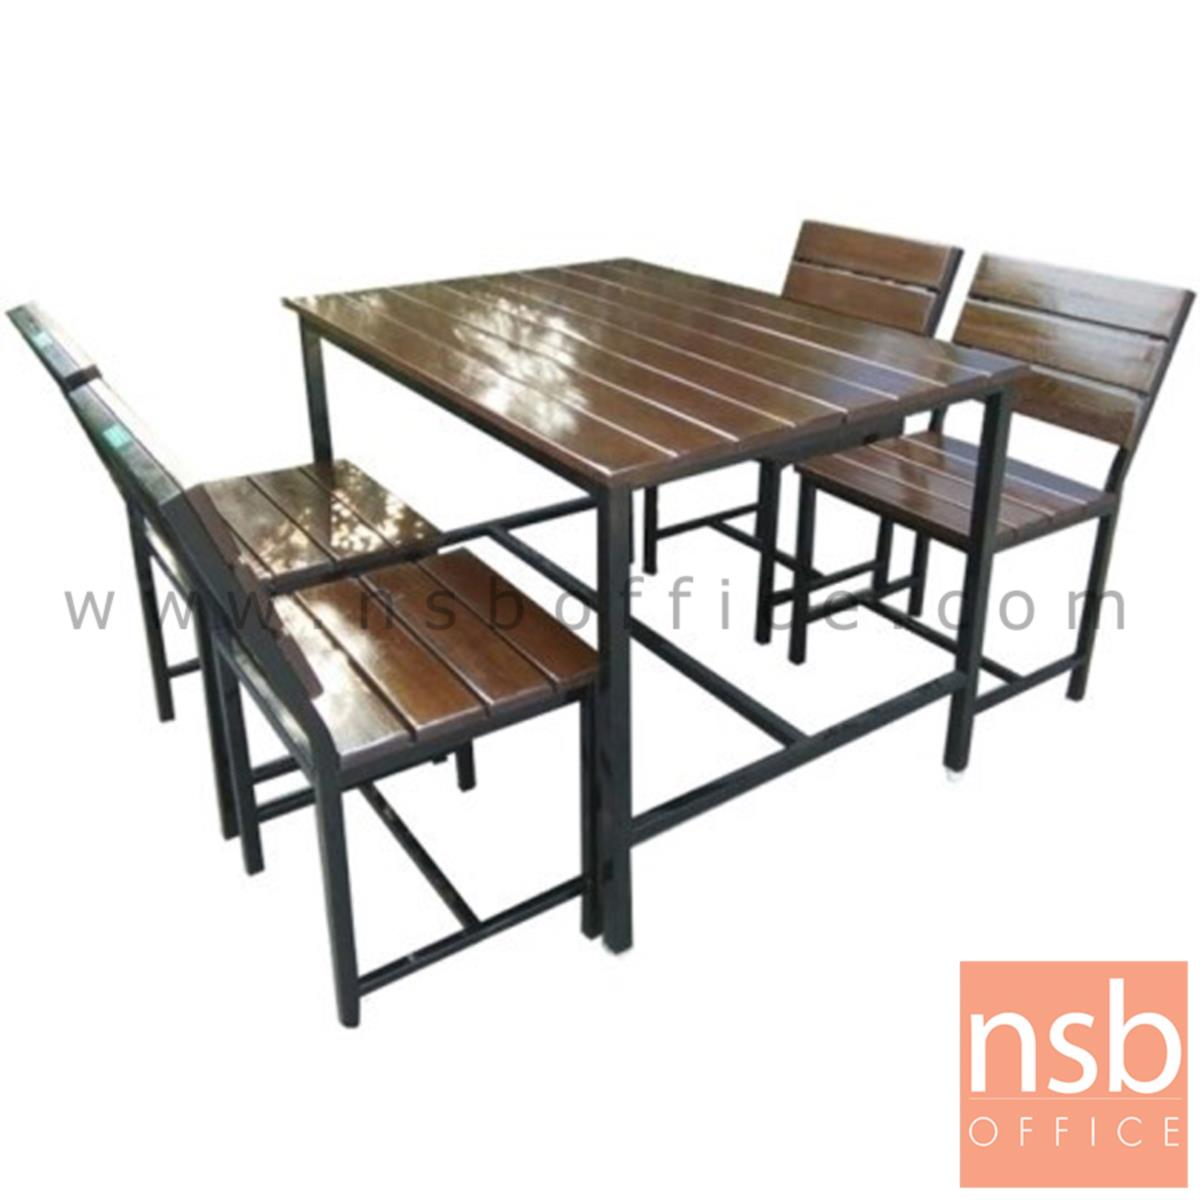 ชุดโต๊ะและเก้าอี้กิจกรรมไม้ระแนงทำสีโอ๊ค รุ่น VIRGINIA (เวอร์จิเนีย) ขนาด 120W ,150W cm. ขาเหล็ก  